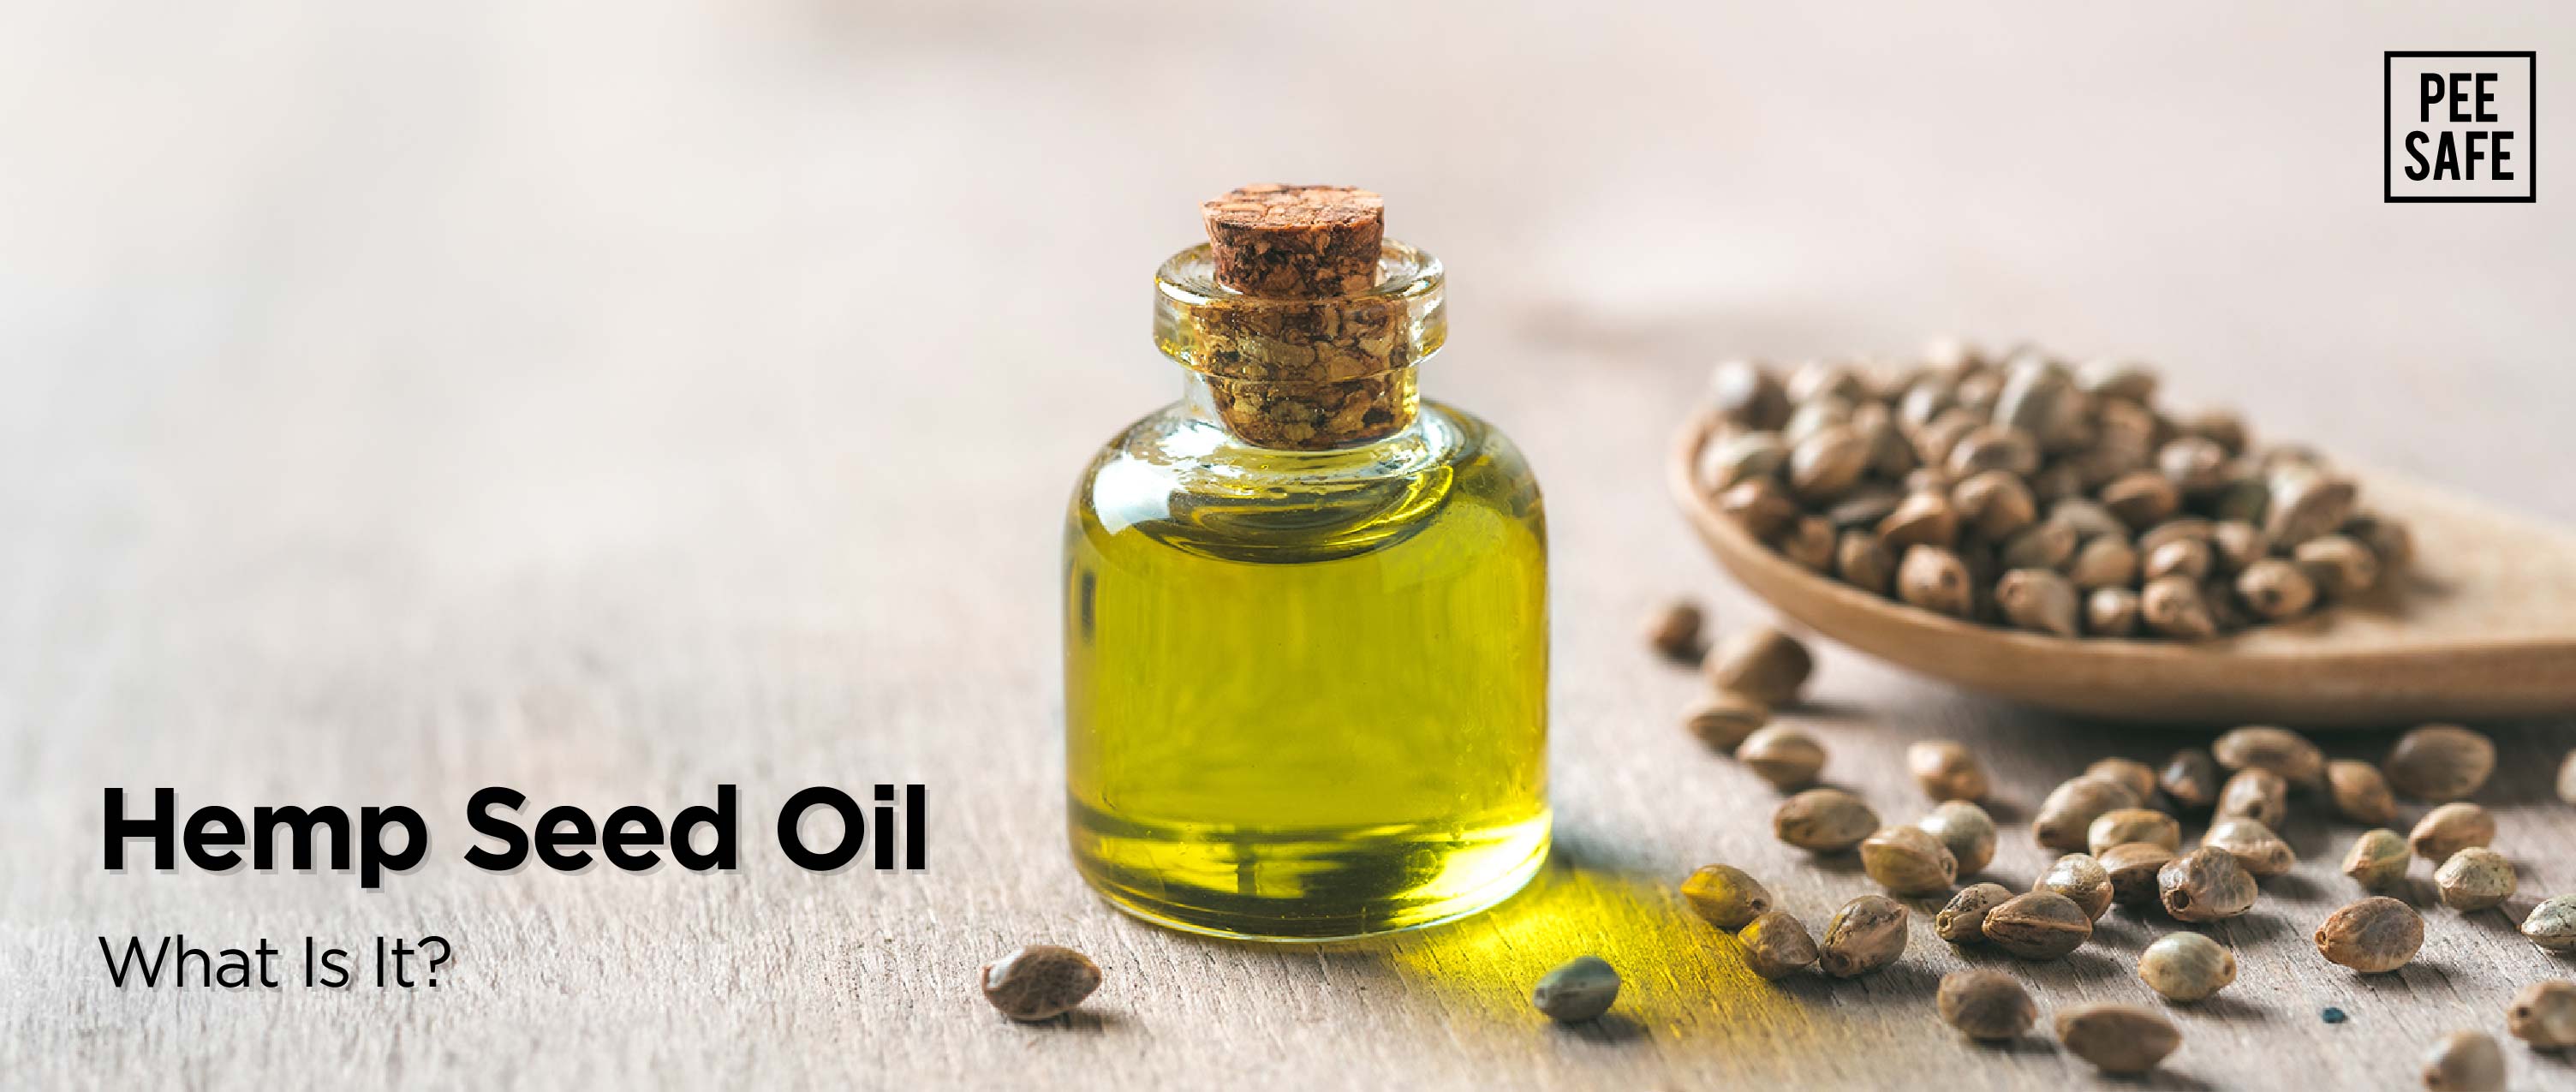 Hemp Seed Oil: What Is It?